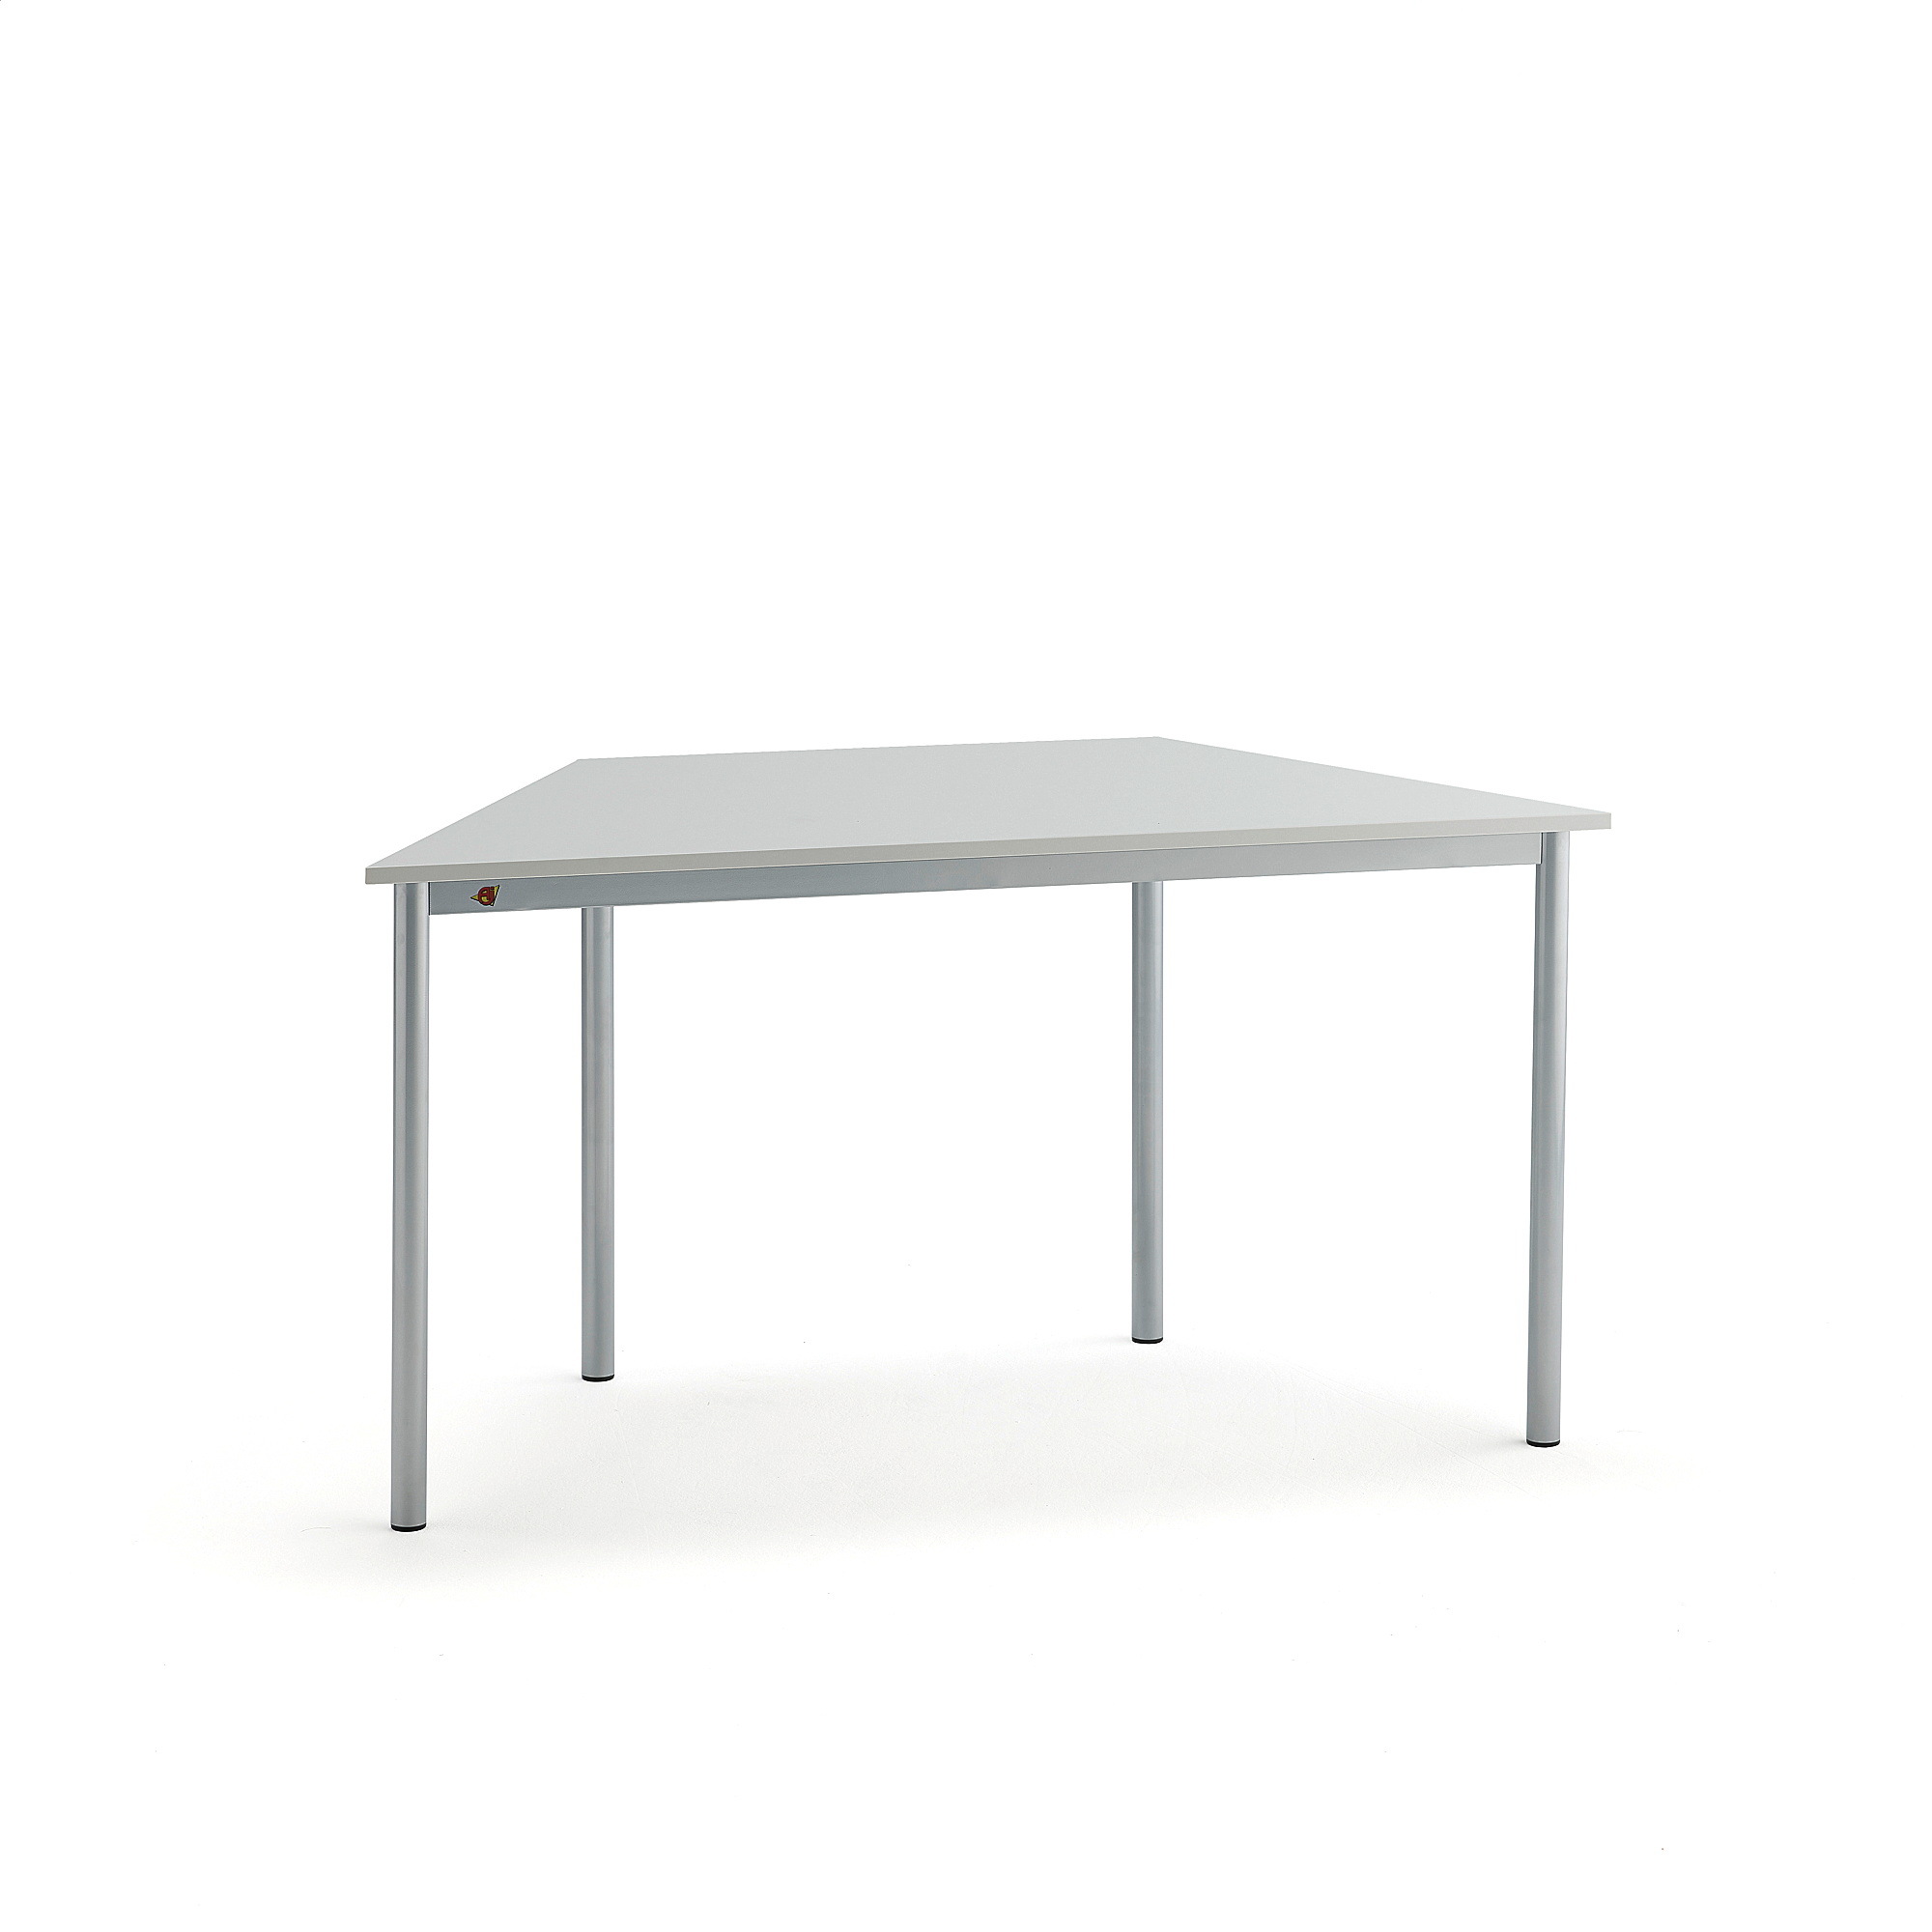 Stůl BORÅS TRAPETS, 1400x700x720 mm, stříbrné nohy, HPL deska, šedá